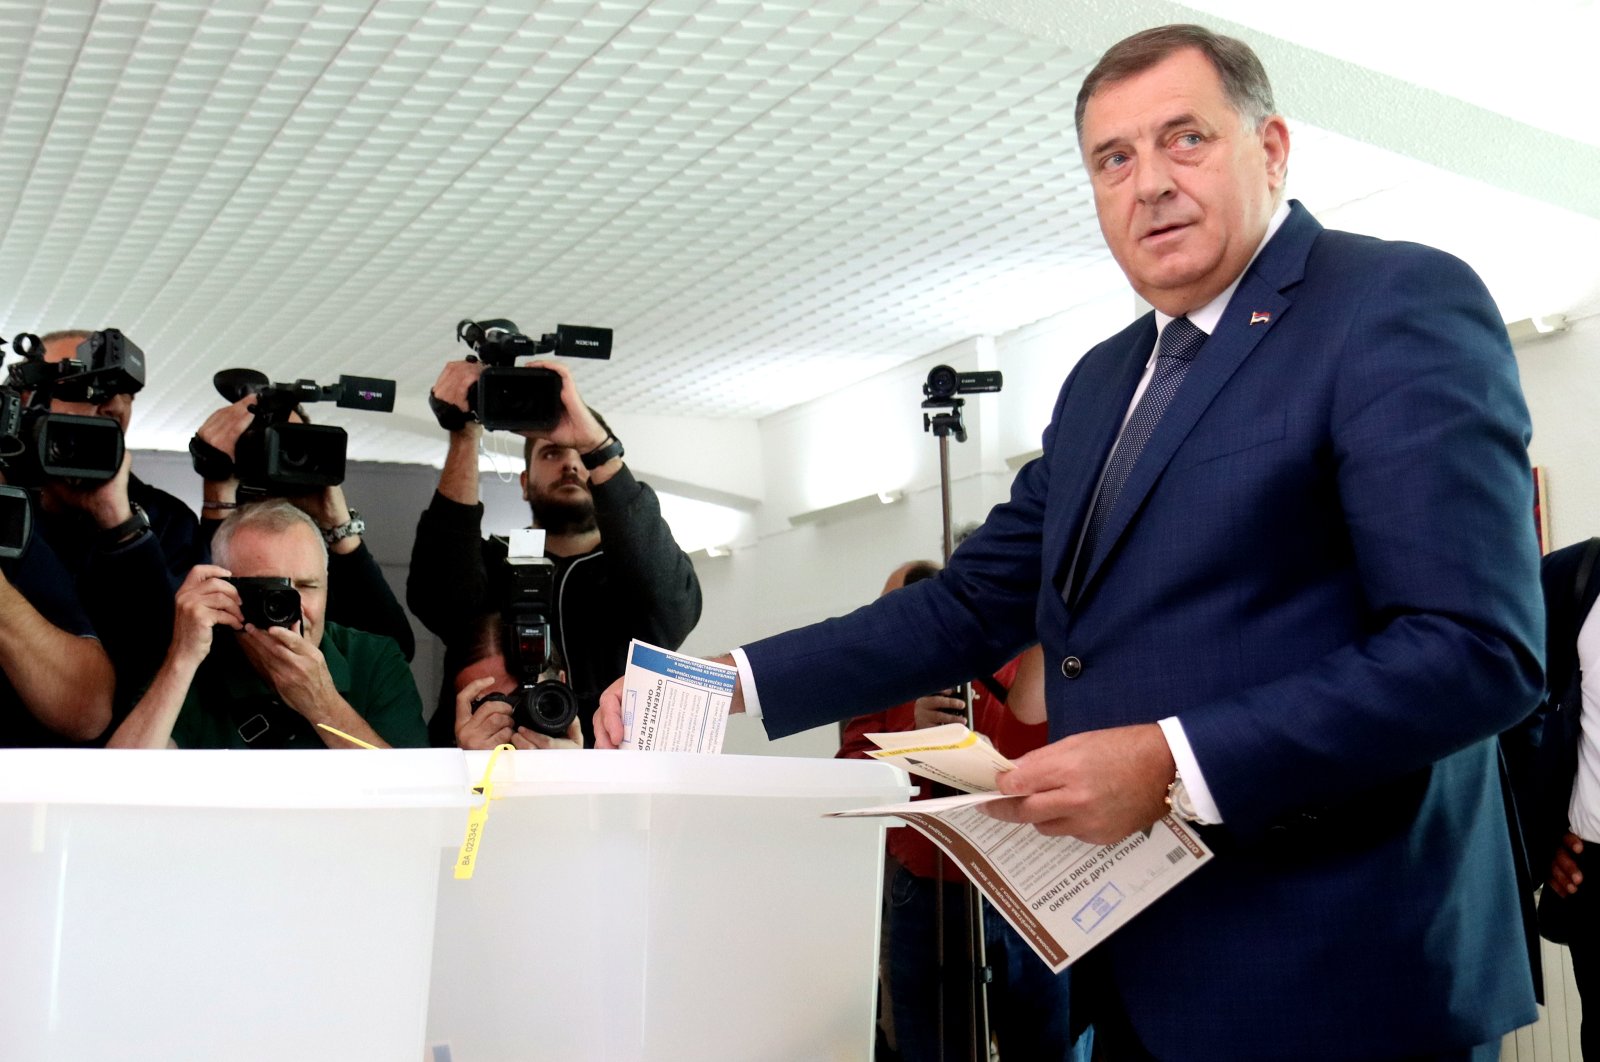 Milorad Dodik casts his vote in general elections, in Banja Luka, Bosnia-Herzegovina, Oct. 2, 2022. (EPA Photo)